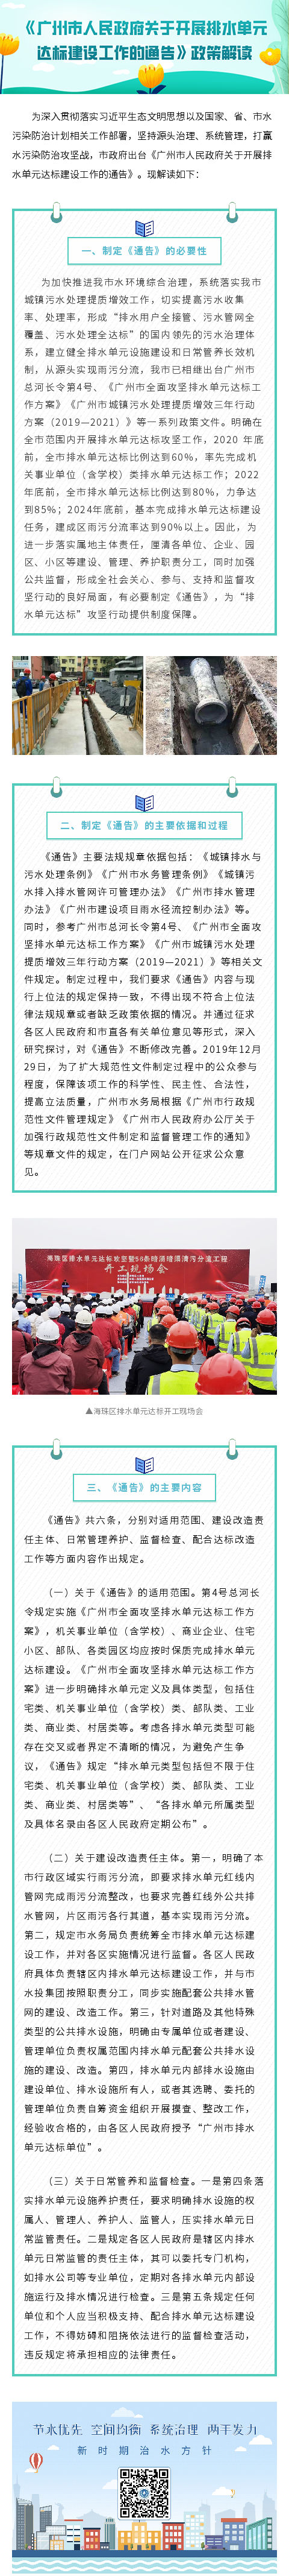 《广州市人民政府关于开展排水单元达标建设工作的通告》政策解读.png